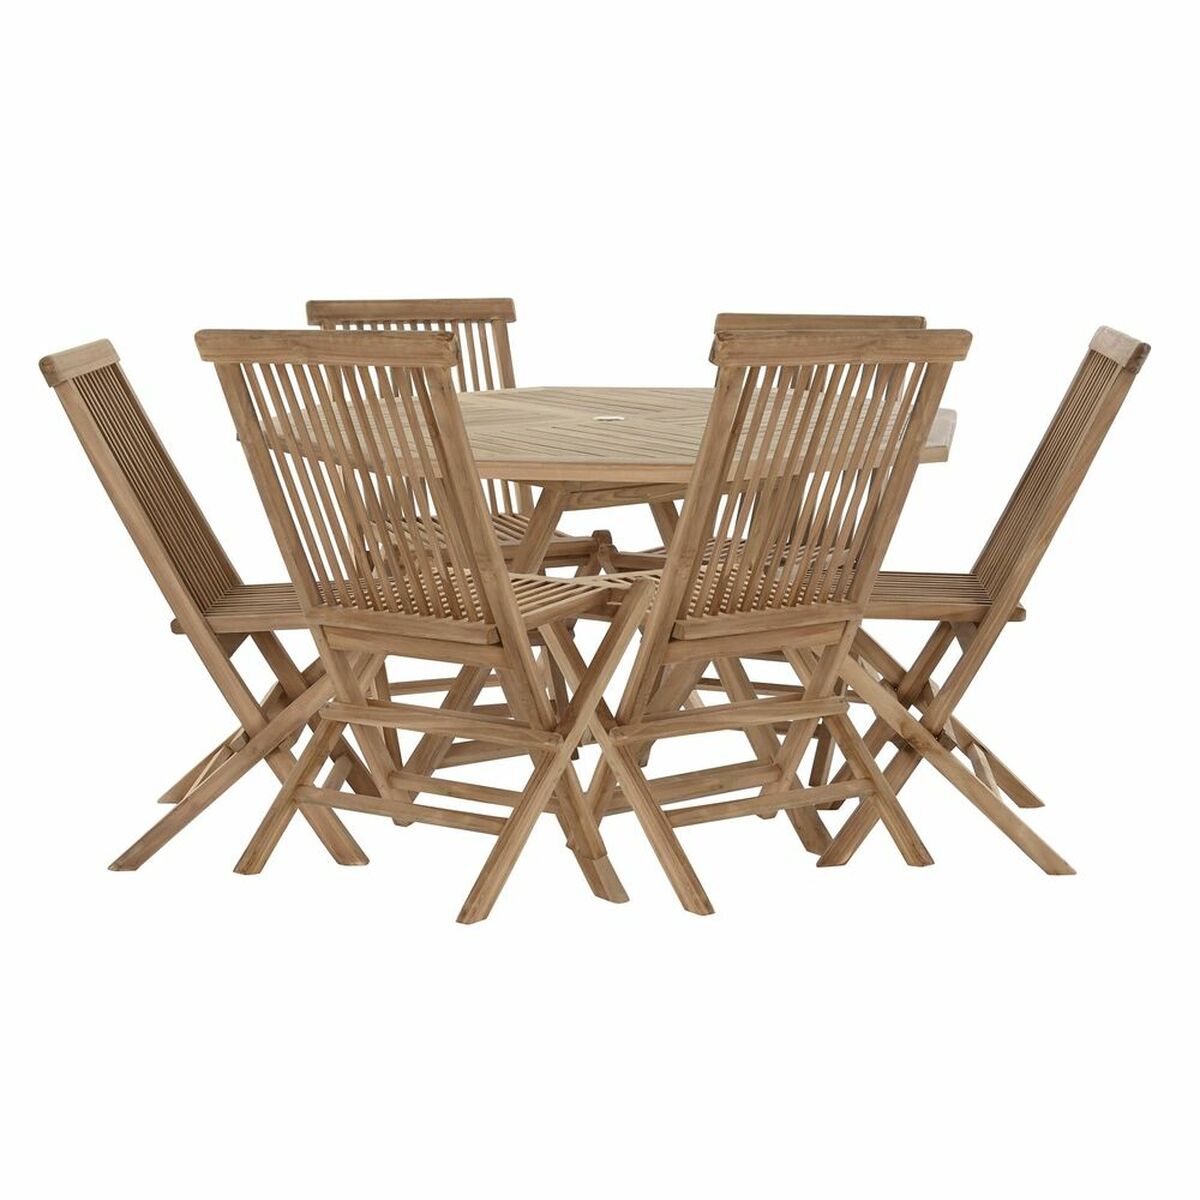 Tischset mit Stühlen DKD Home Decor 90 cm 120 x 120 x 75 cm